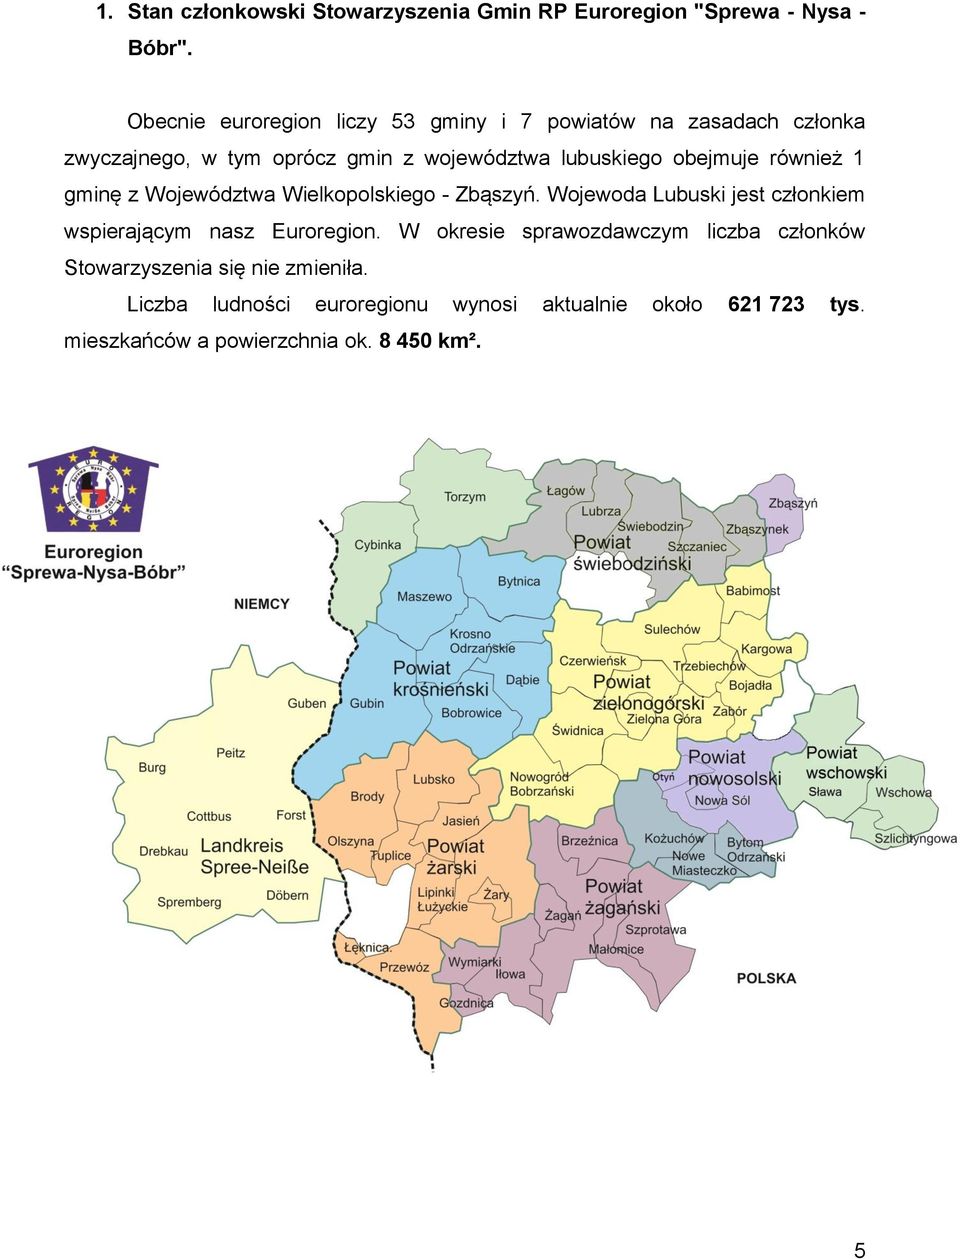 obejmuje również 1 gminę z Województwa Wielkopolskiego - Zbąszyń. Wojewoda Lubuski jest członkiem wspierającym nasz Euroregion.